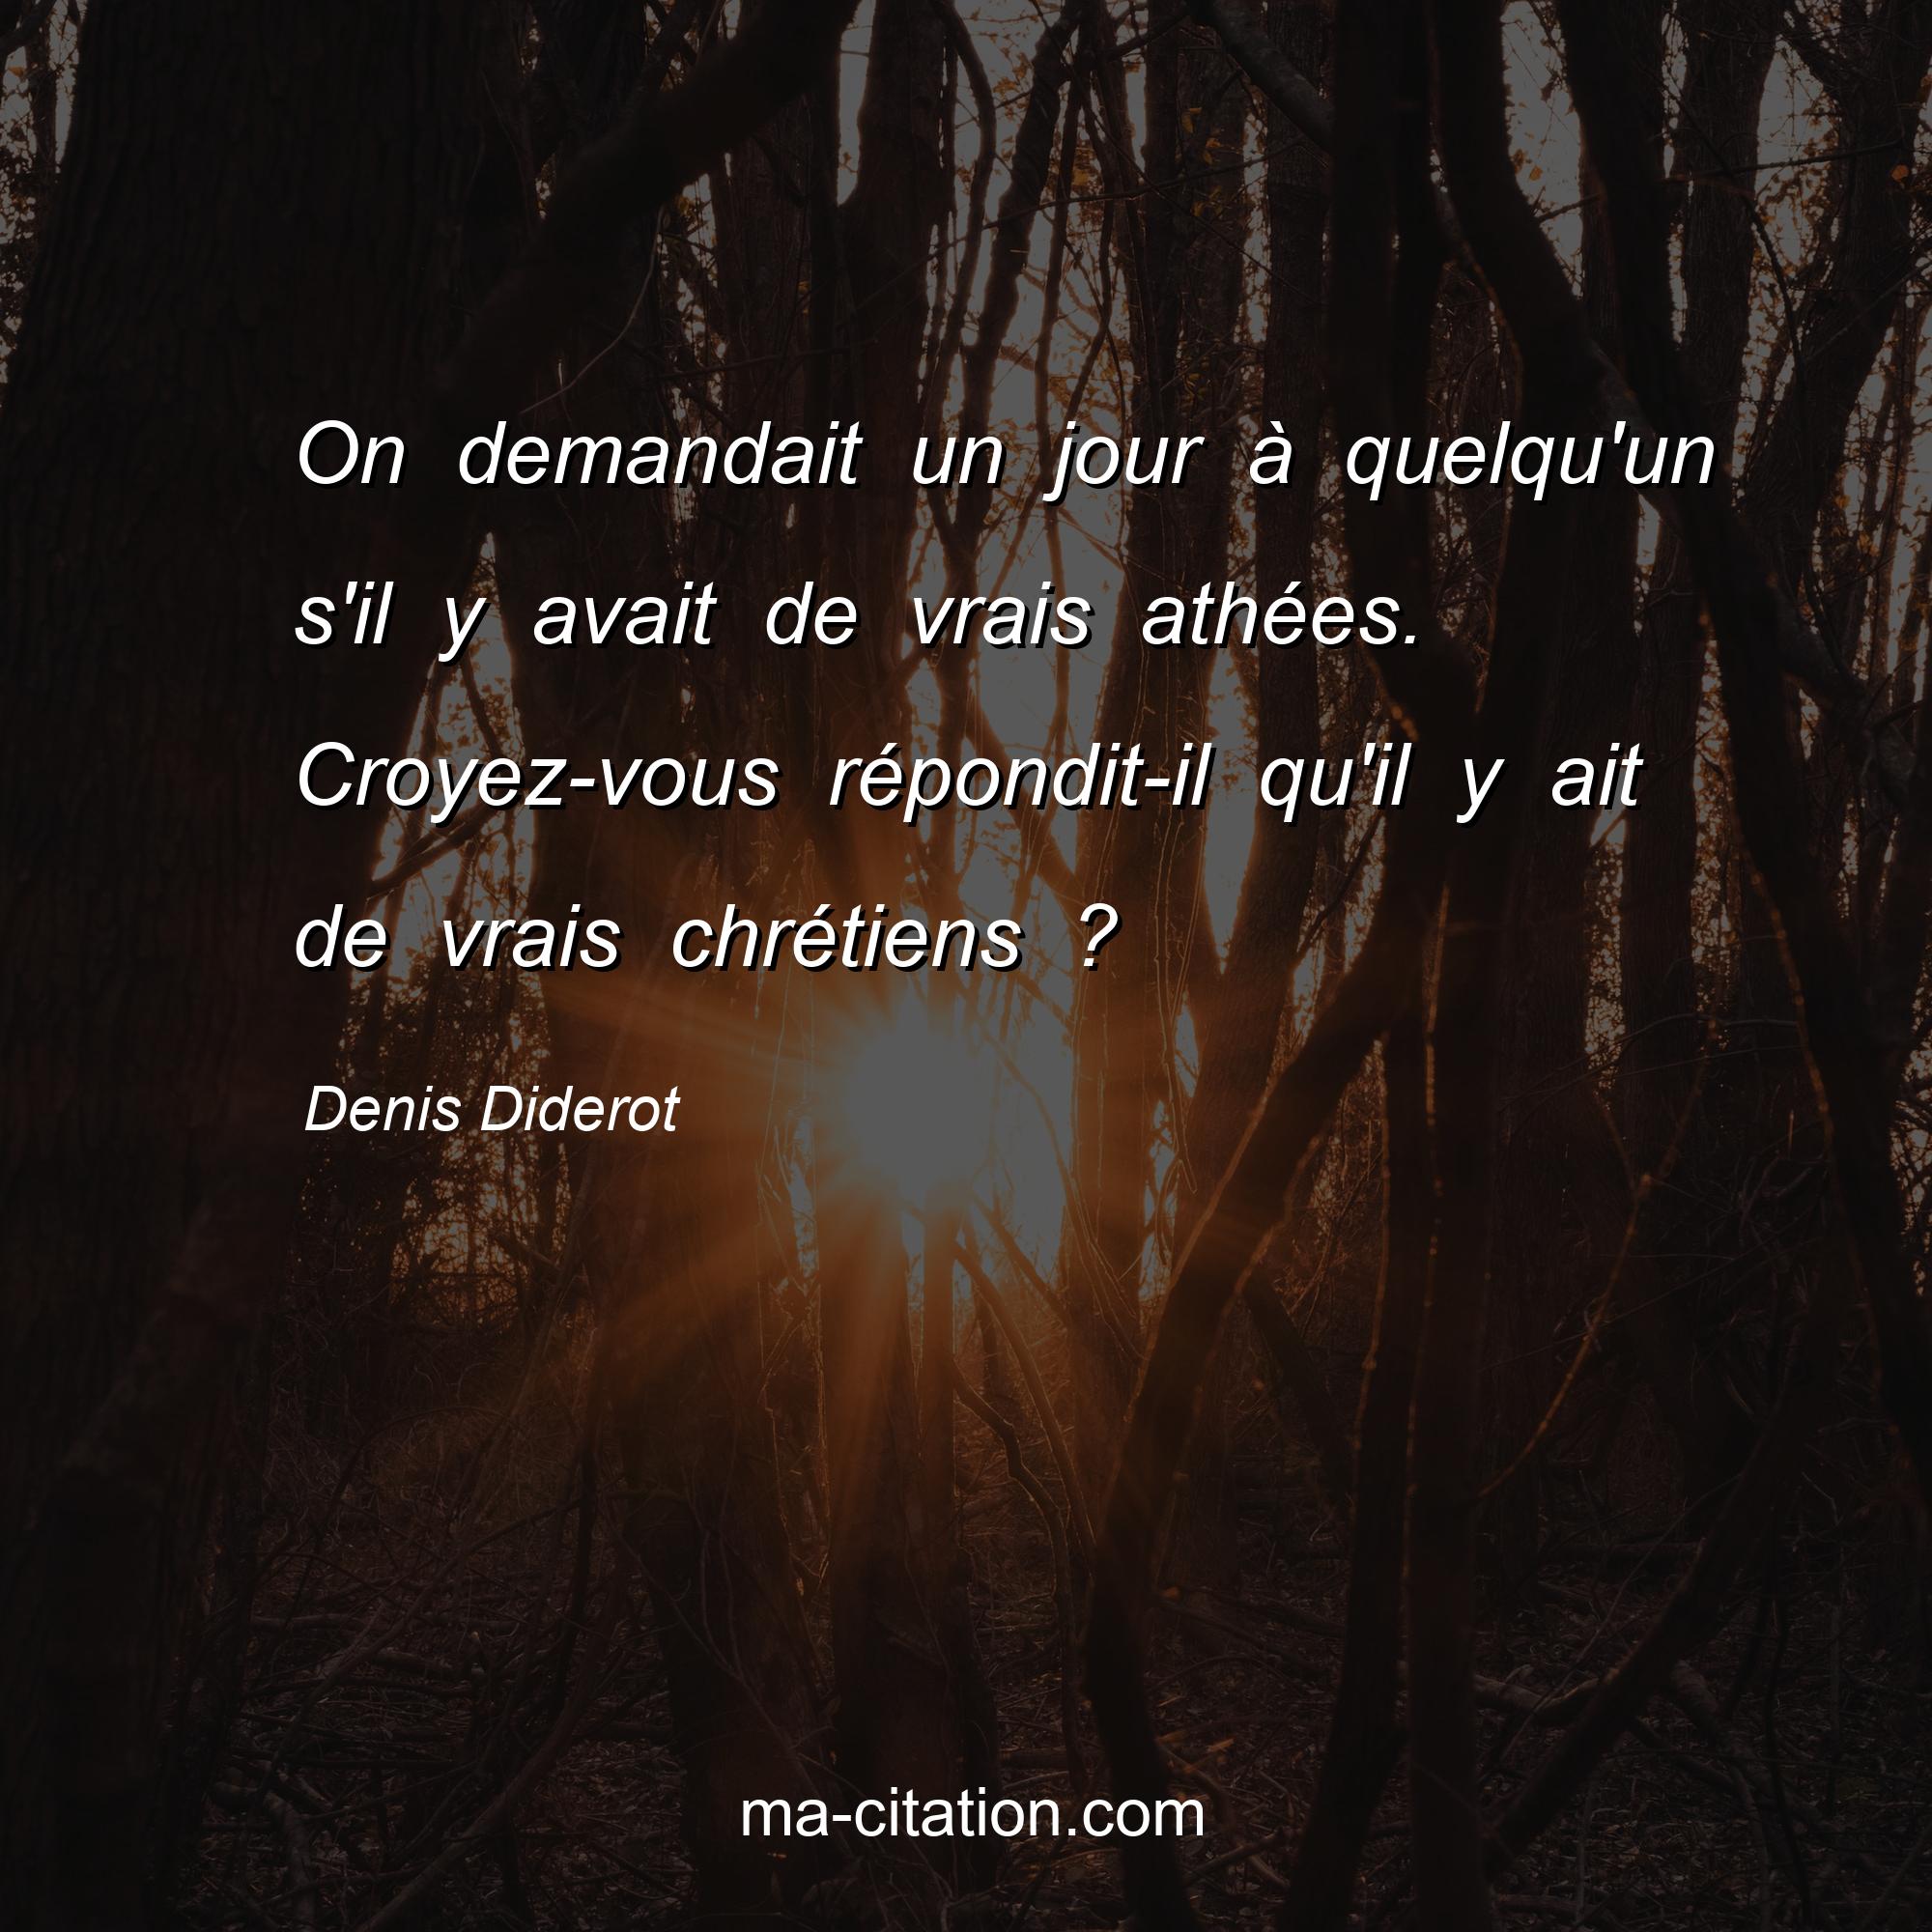 Denis Diderot : On demandait un jour à quelqu'un s'il y avait de vrais athées. Croyez-vous répondit-il qu'il y ait de vrais chrétiens ?